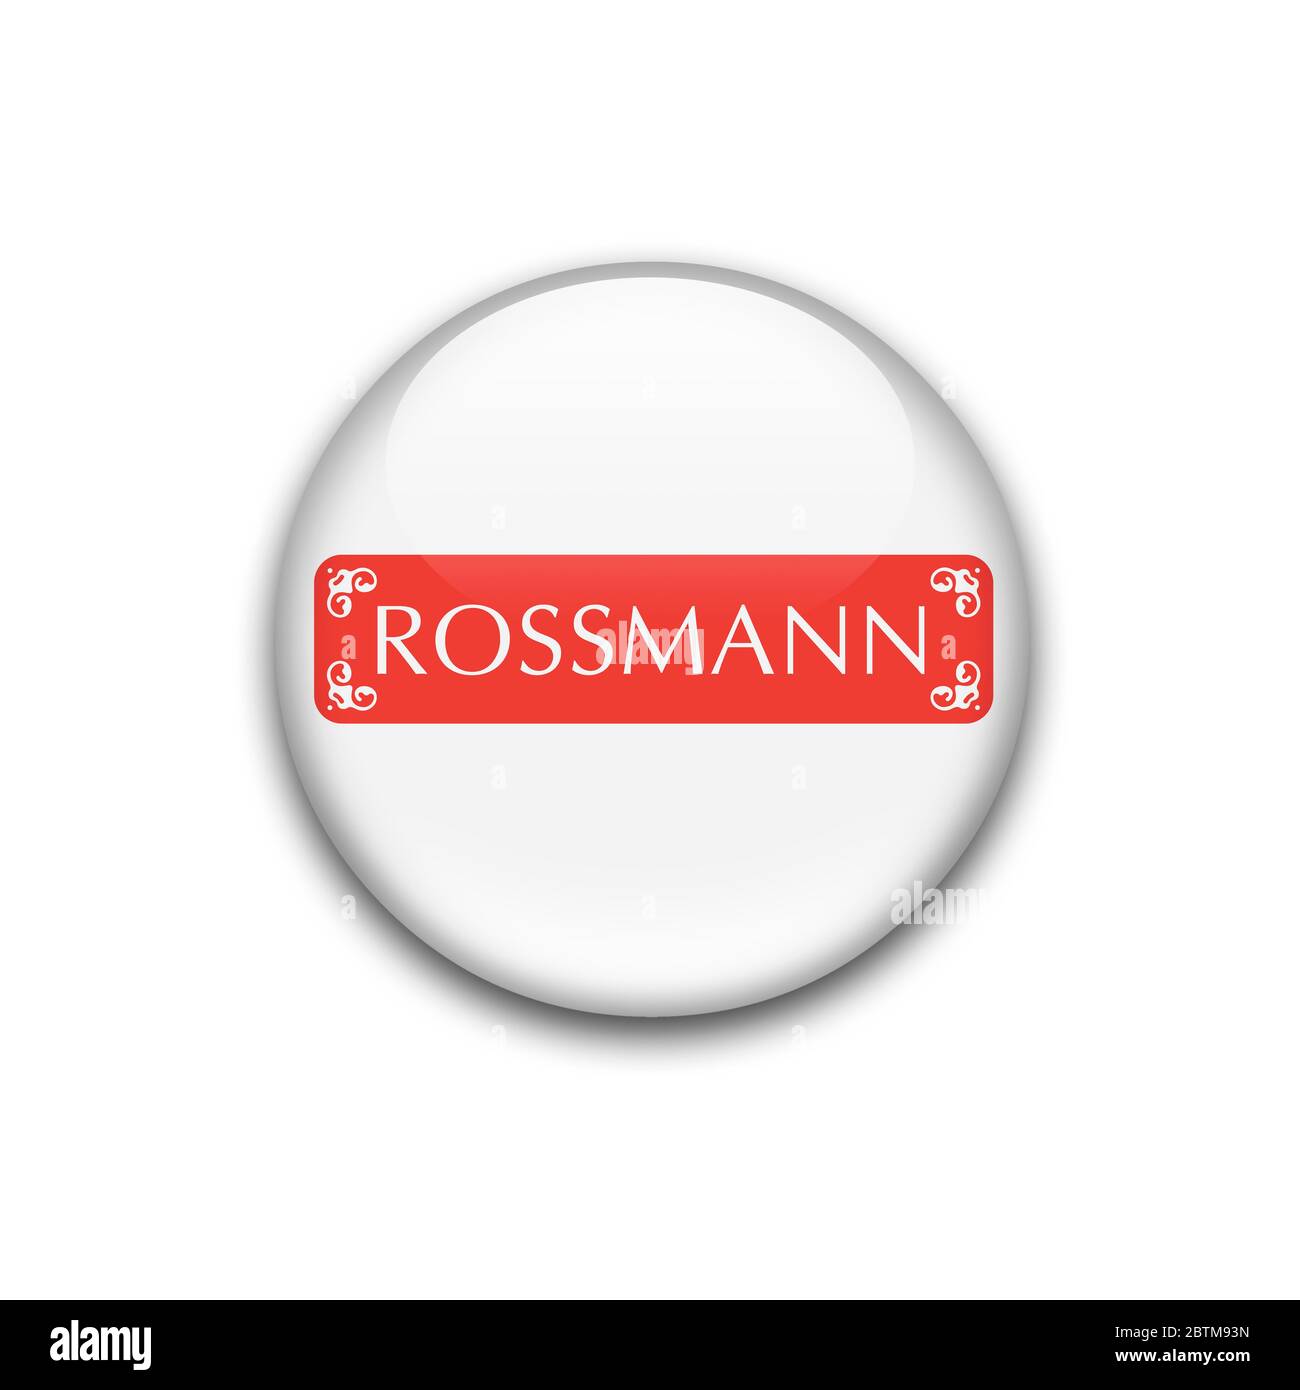 511 Rossmann Images, Stock Photos, 3D objects, & Vectors